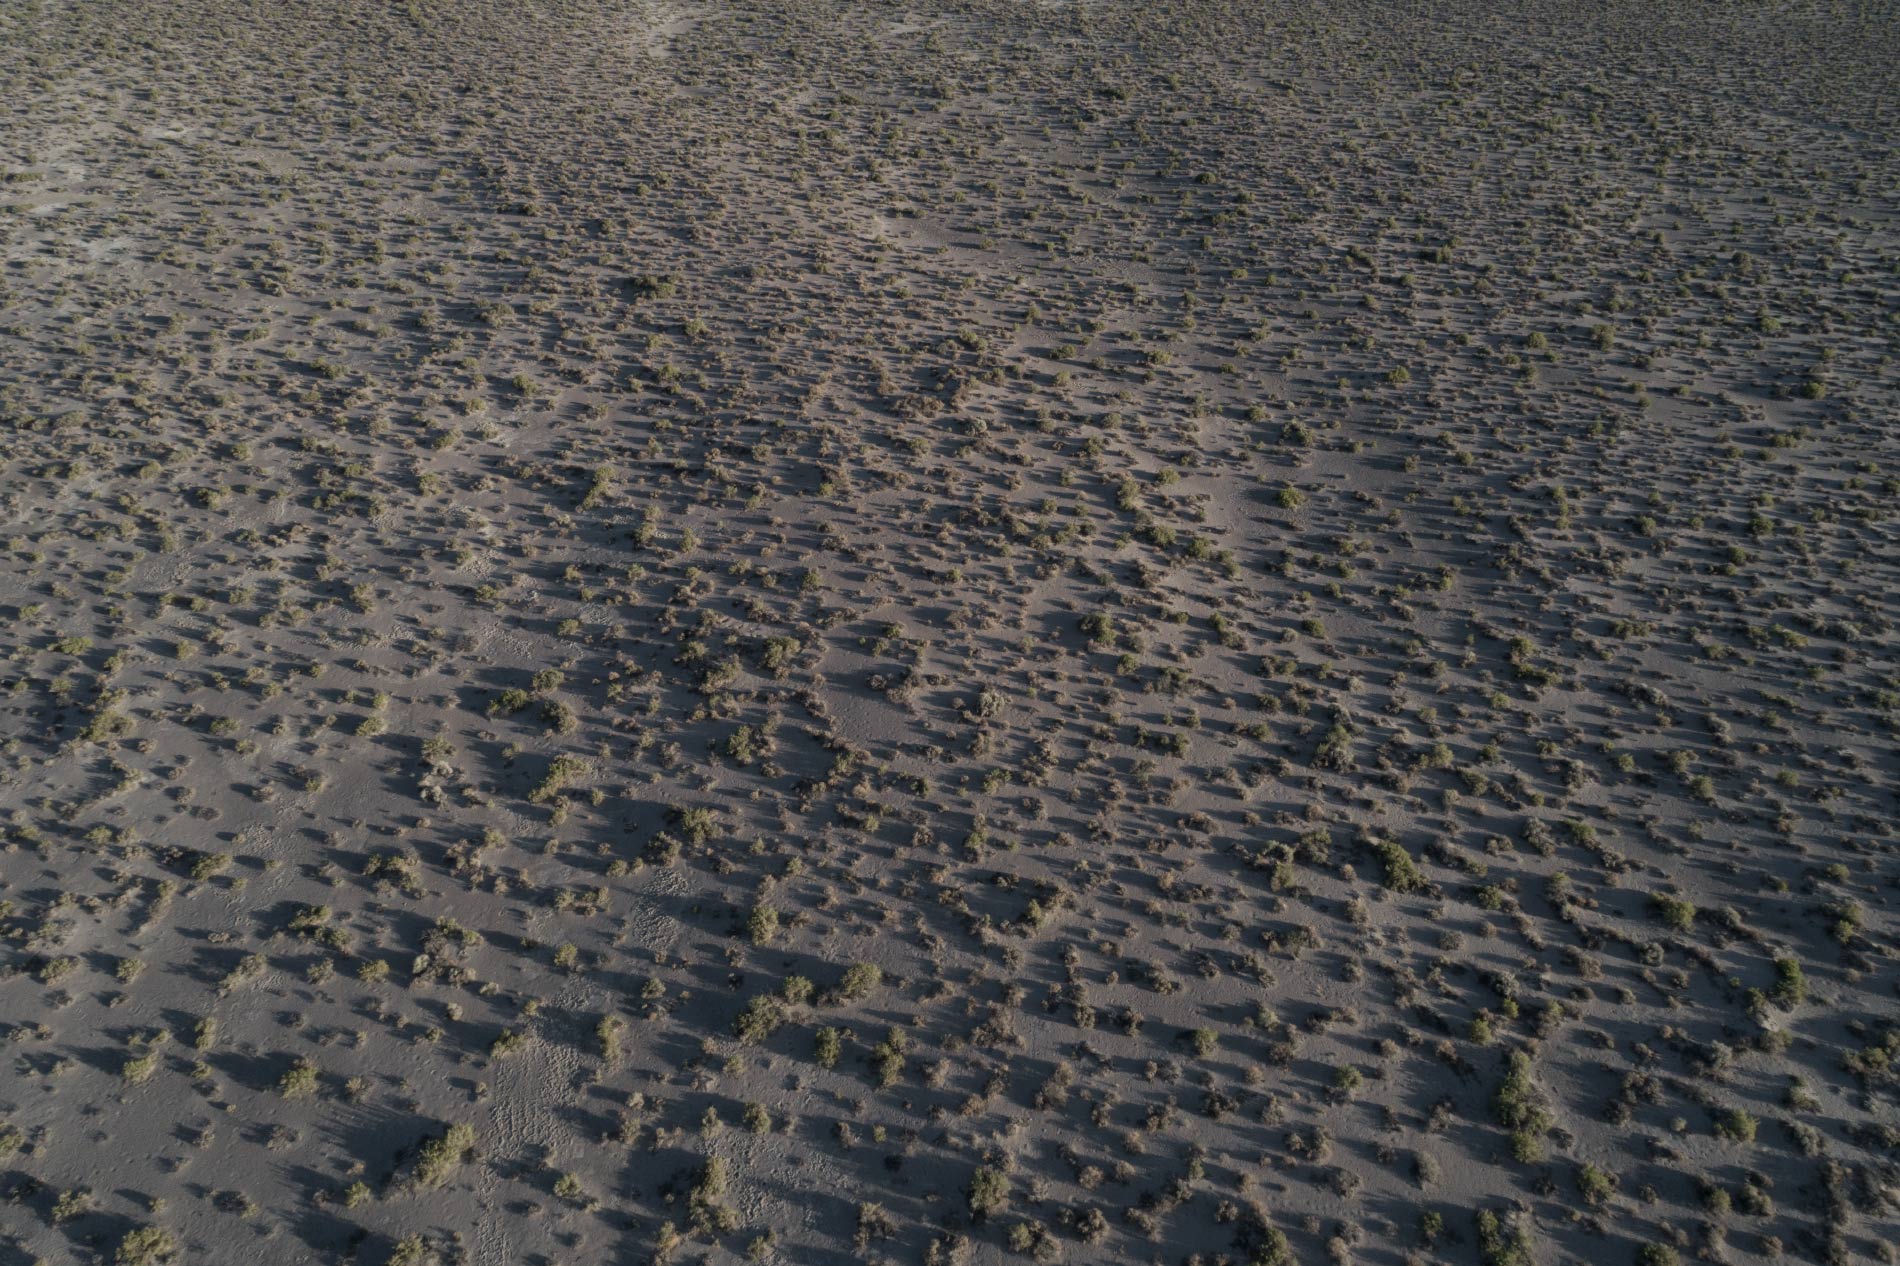   The barren field #01 (Manzanar, California)  